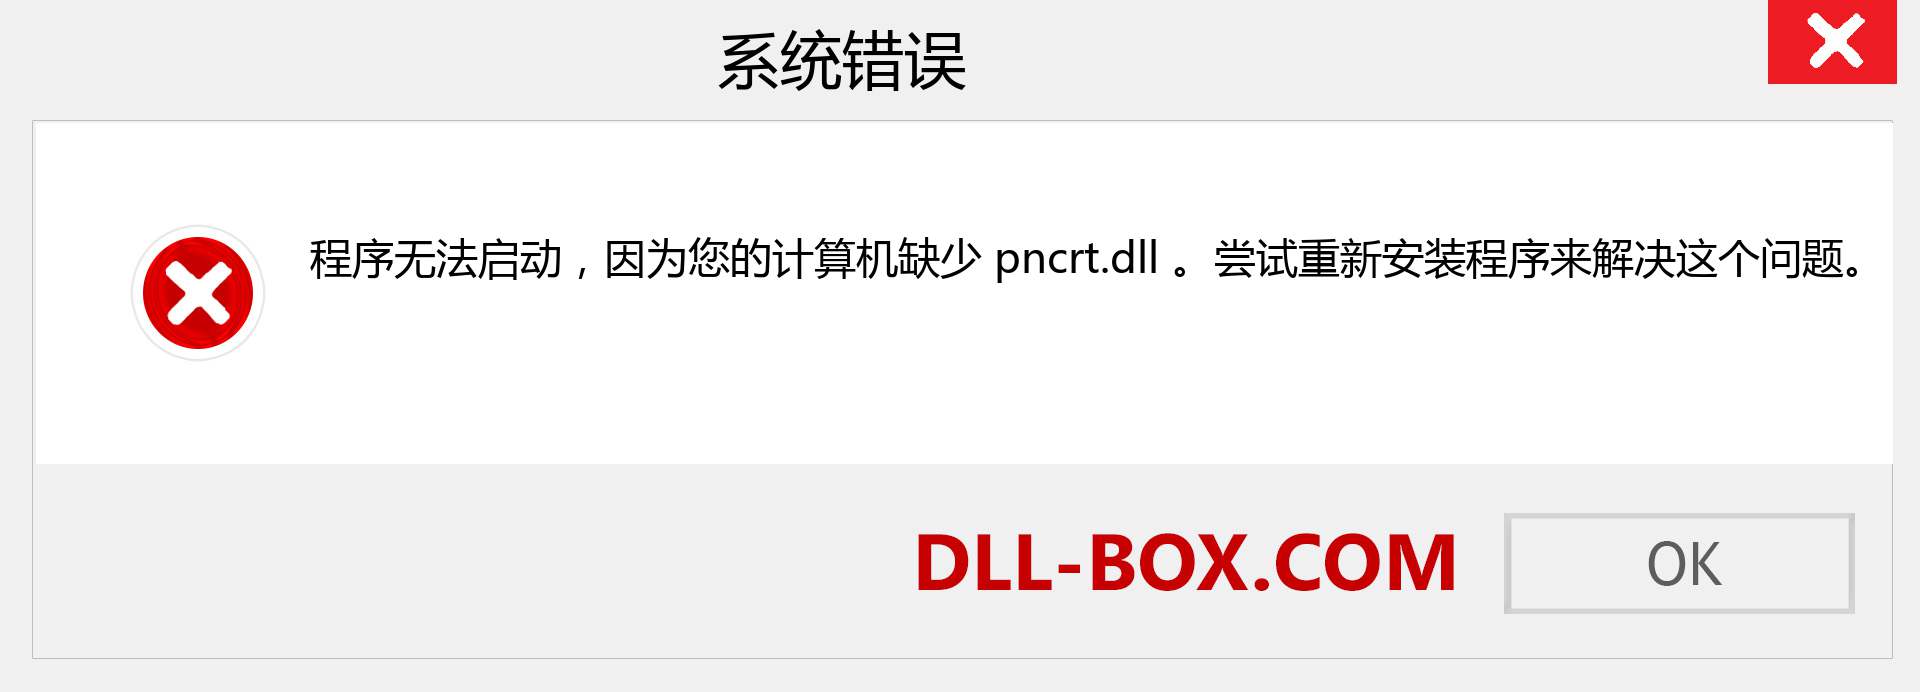 pncrt.dll 文件丢失？。 适用于 Windows 7、8、10 的下载 - 修复 Windows、照片、图像上的 pncrt dll 丢失错误